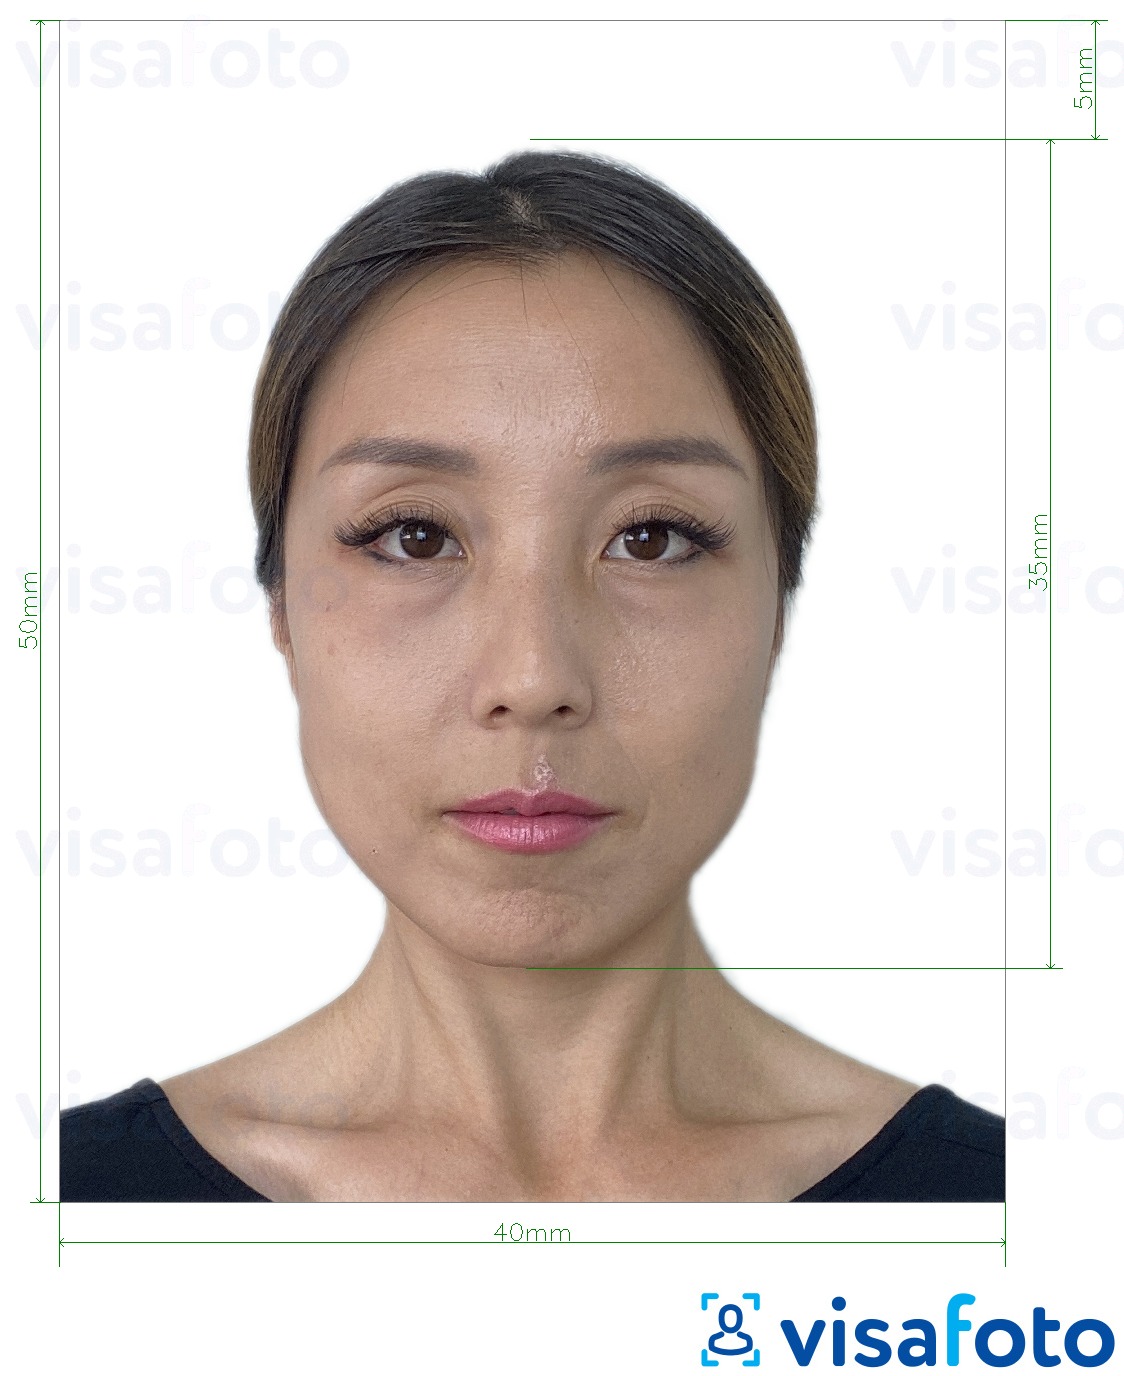 Příklad fotografie Hongkongský pas 40x50 mm (4x5 cm) s přesnou specifikací velikosti